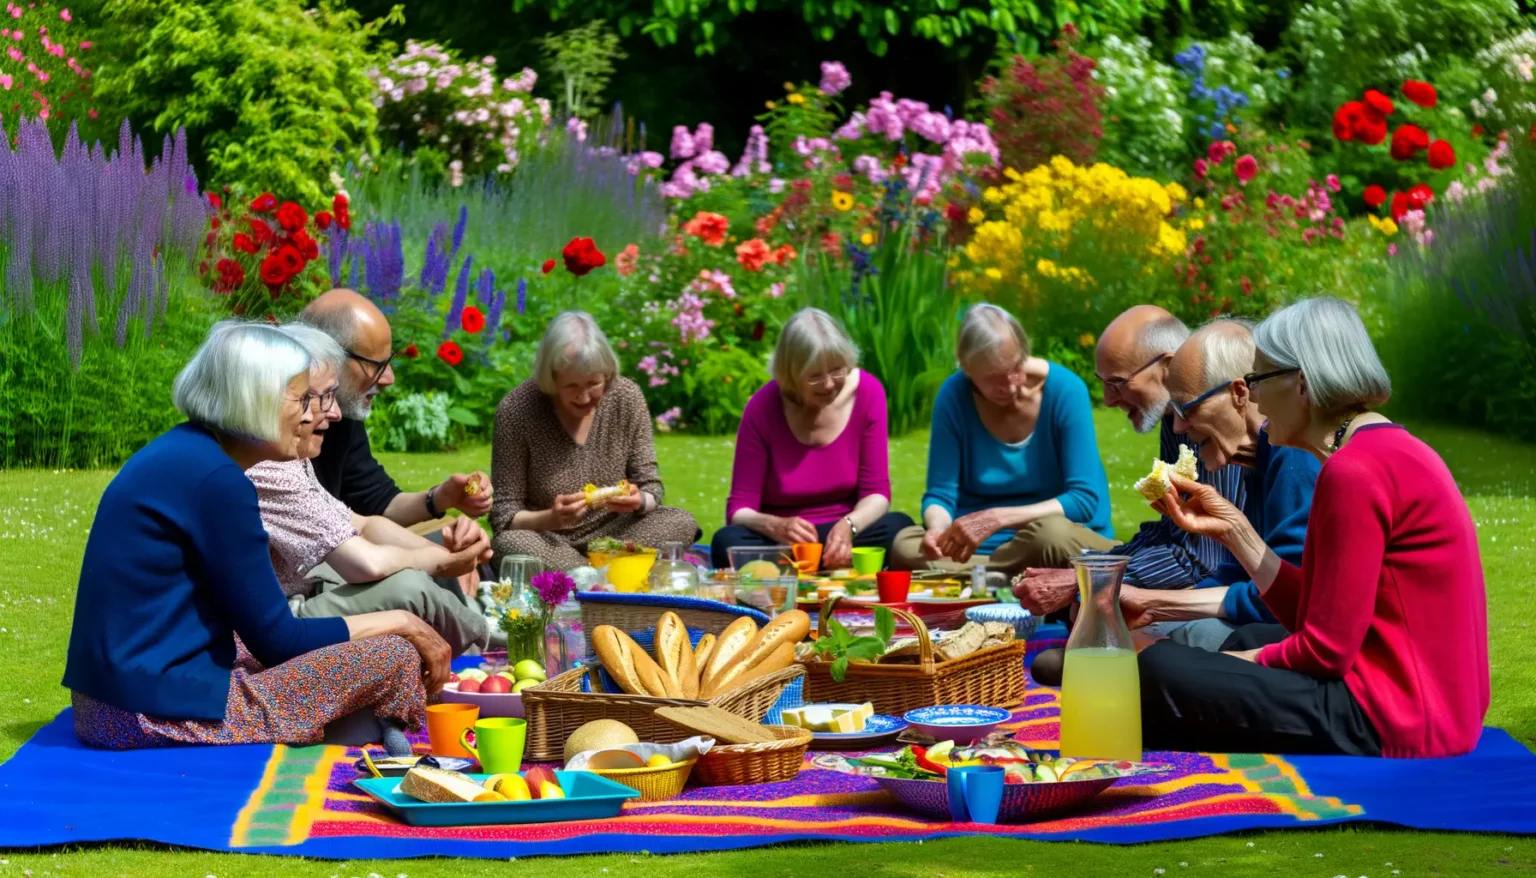 Eine Gruppe älterer Menschen genießt ein Picknick auf einer bunten Decke im Gras, umgeben von einem wunderschönen, blühenden Garten. Sie sind lächelnd und essen gemeinsam, mit einem Arrangement aus Brot, Obst und Getränken vor ihnen. Die Atmosphäre ist fröhlich und entspannt.